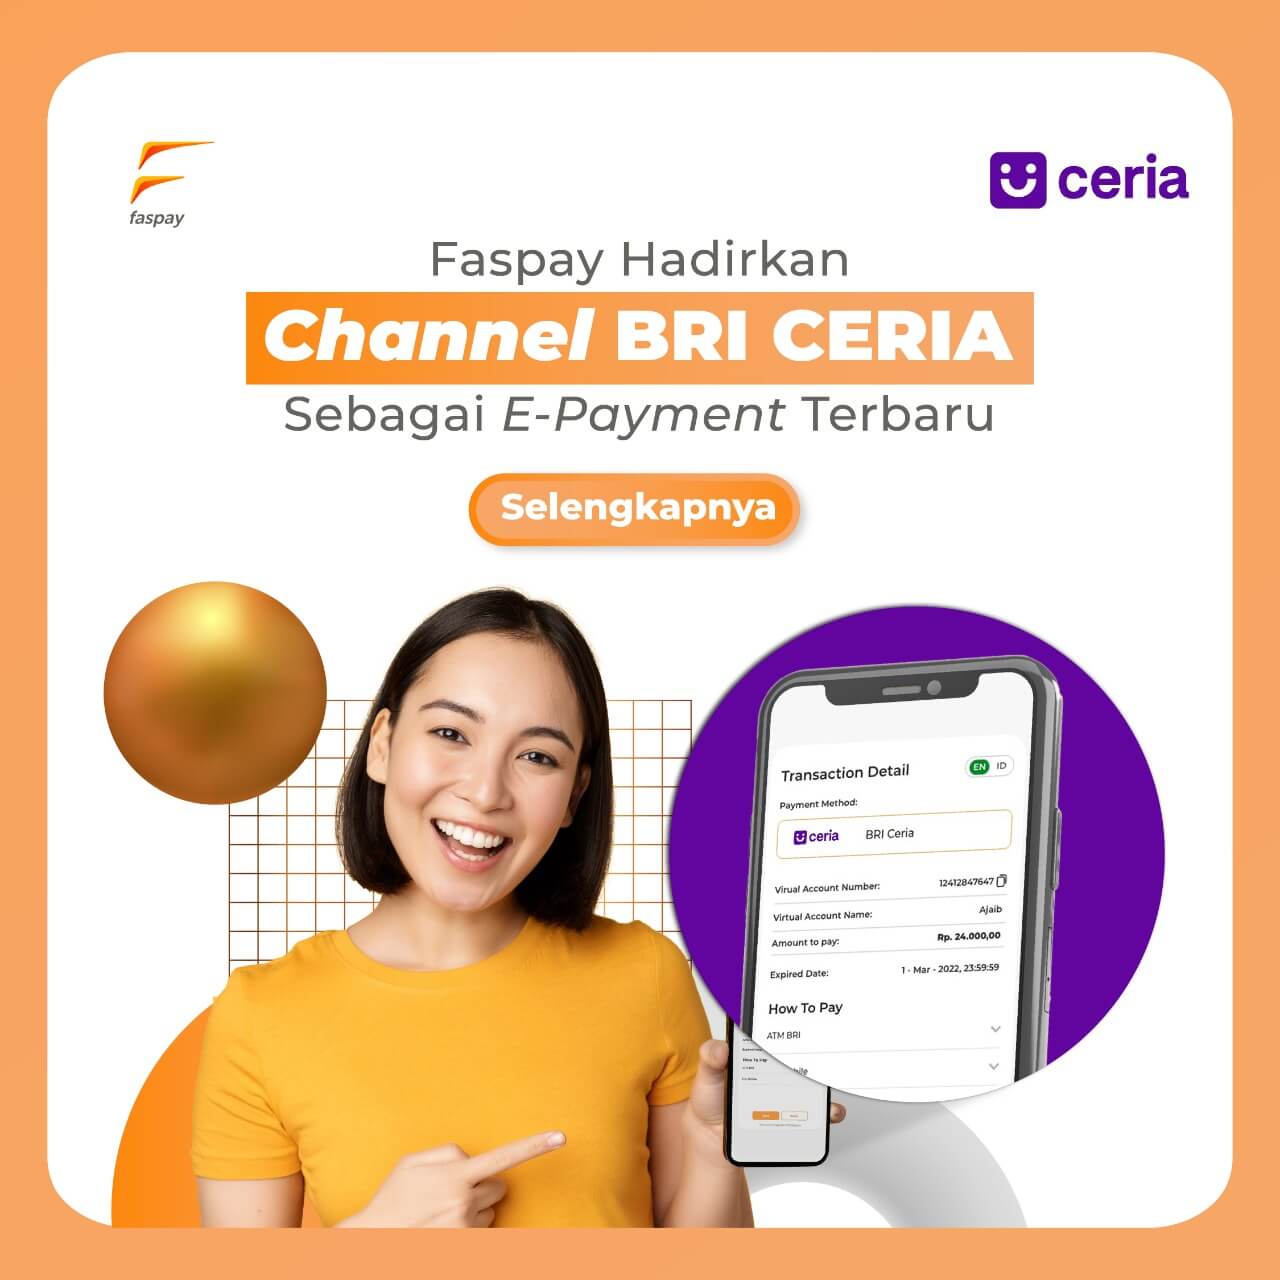 Faspay Hadirkan Channel BRI Ceria Sebagai E-Payment Terbaru